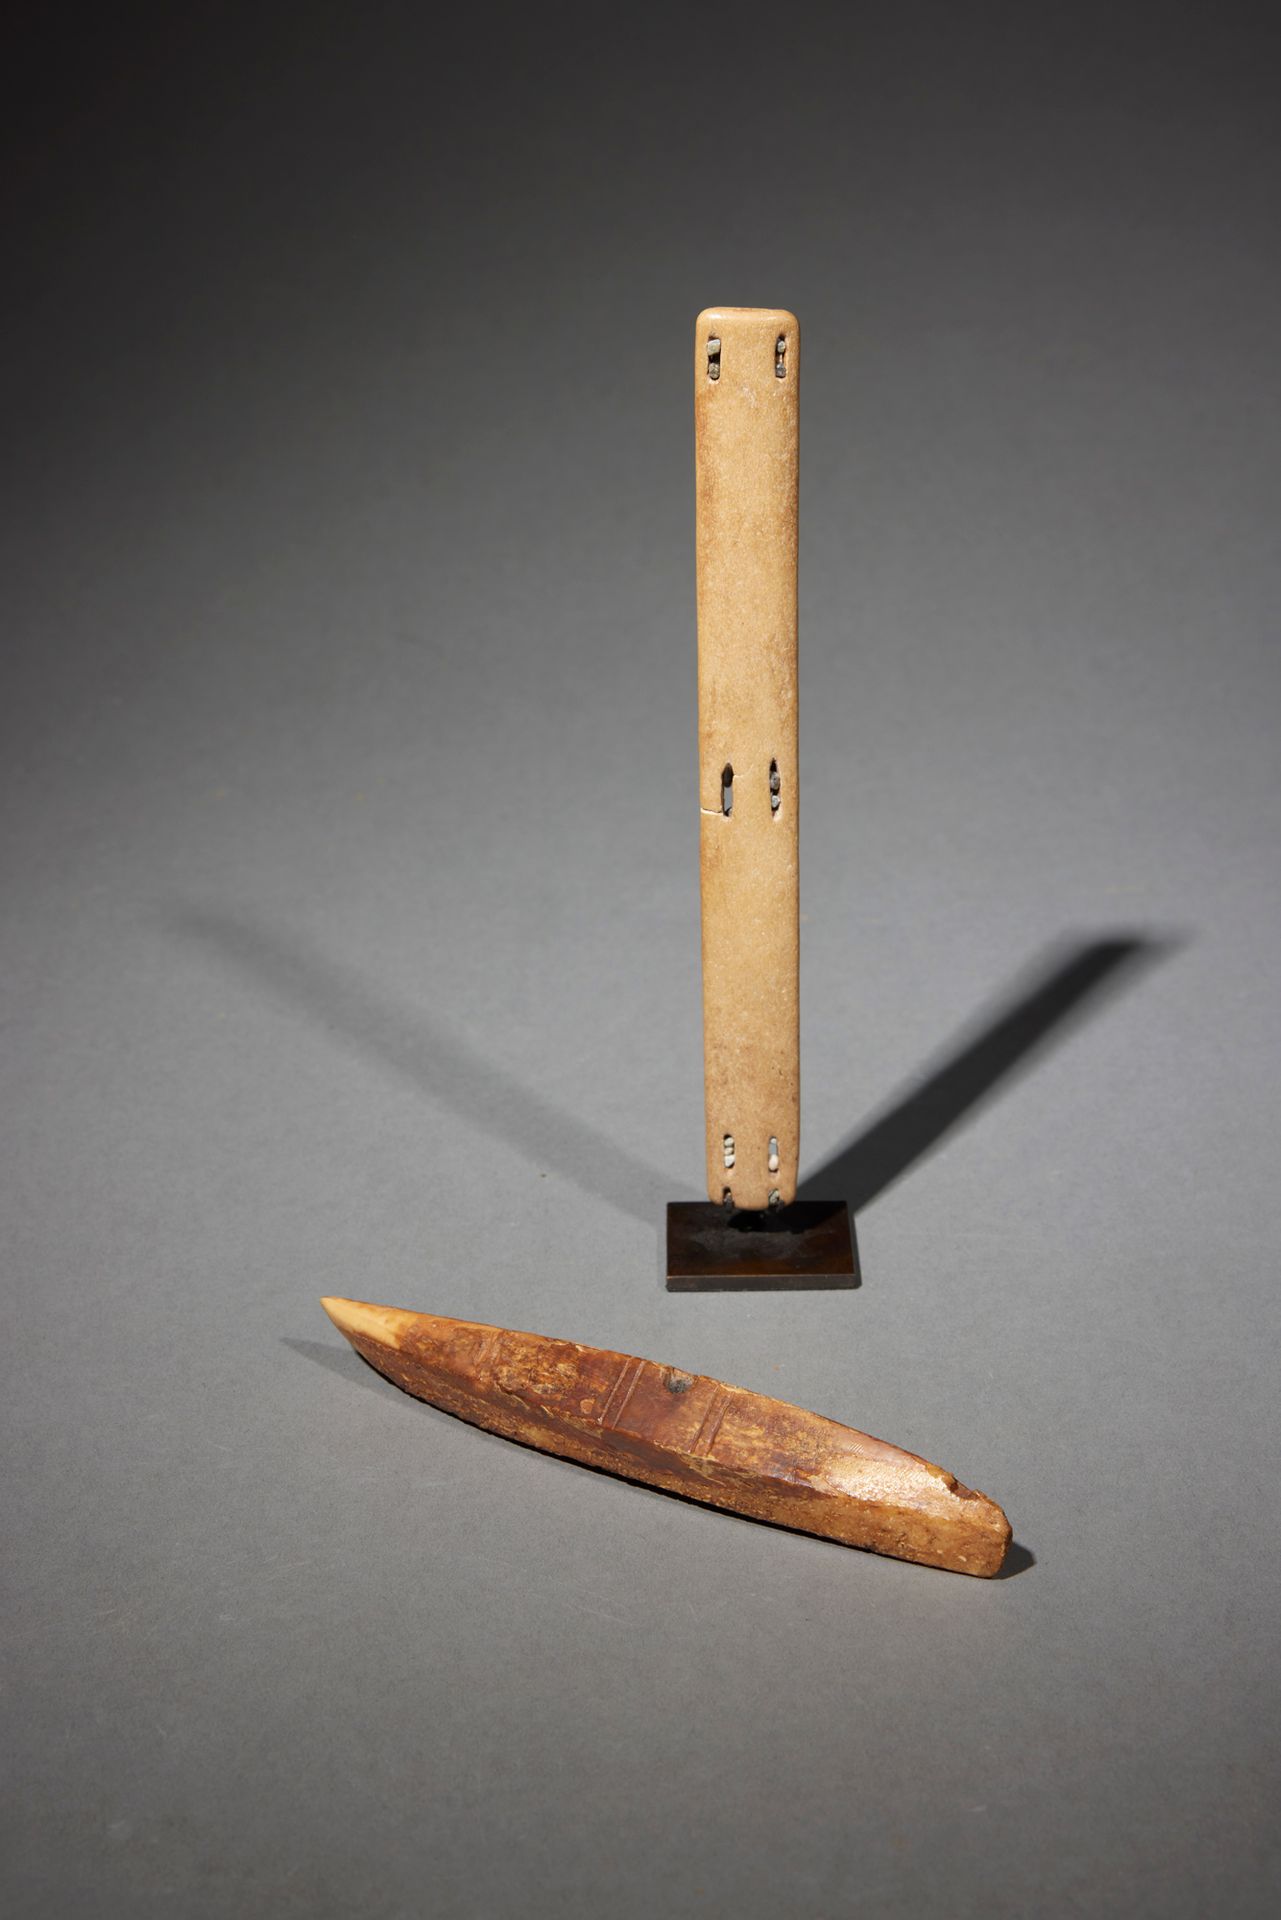 Null 两件爱斯基摩人的手工艺品

阿拉斯加

海象的牙齿和骨头

H.15和18.5厘米



一套两件物品，包括：一个用海象牙齿雕刻的独木舟形状的护身符，&hellip;